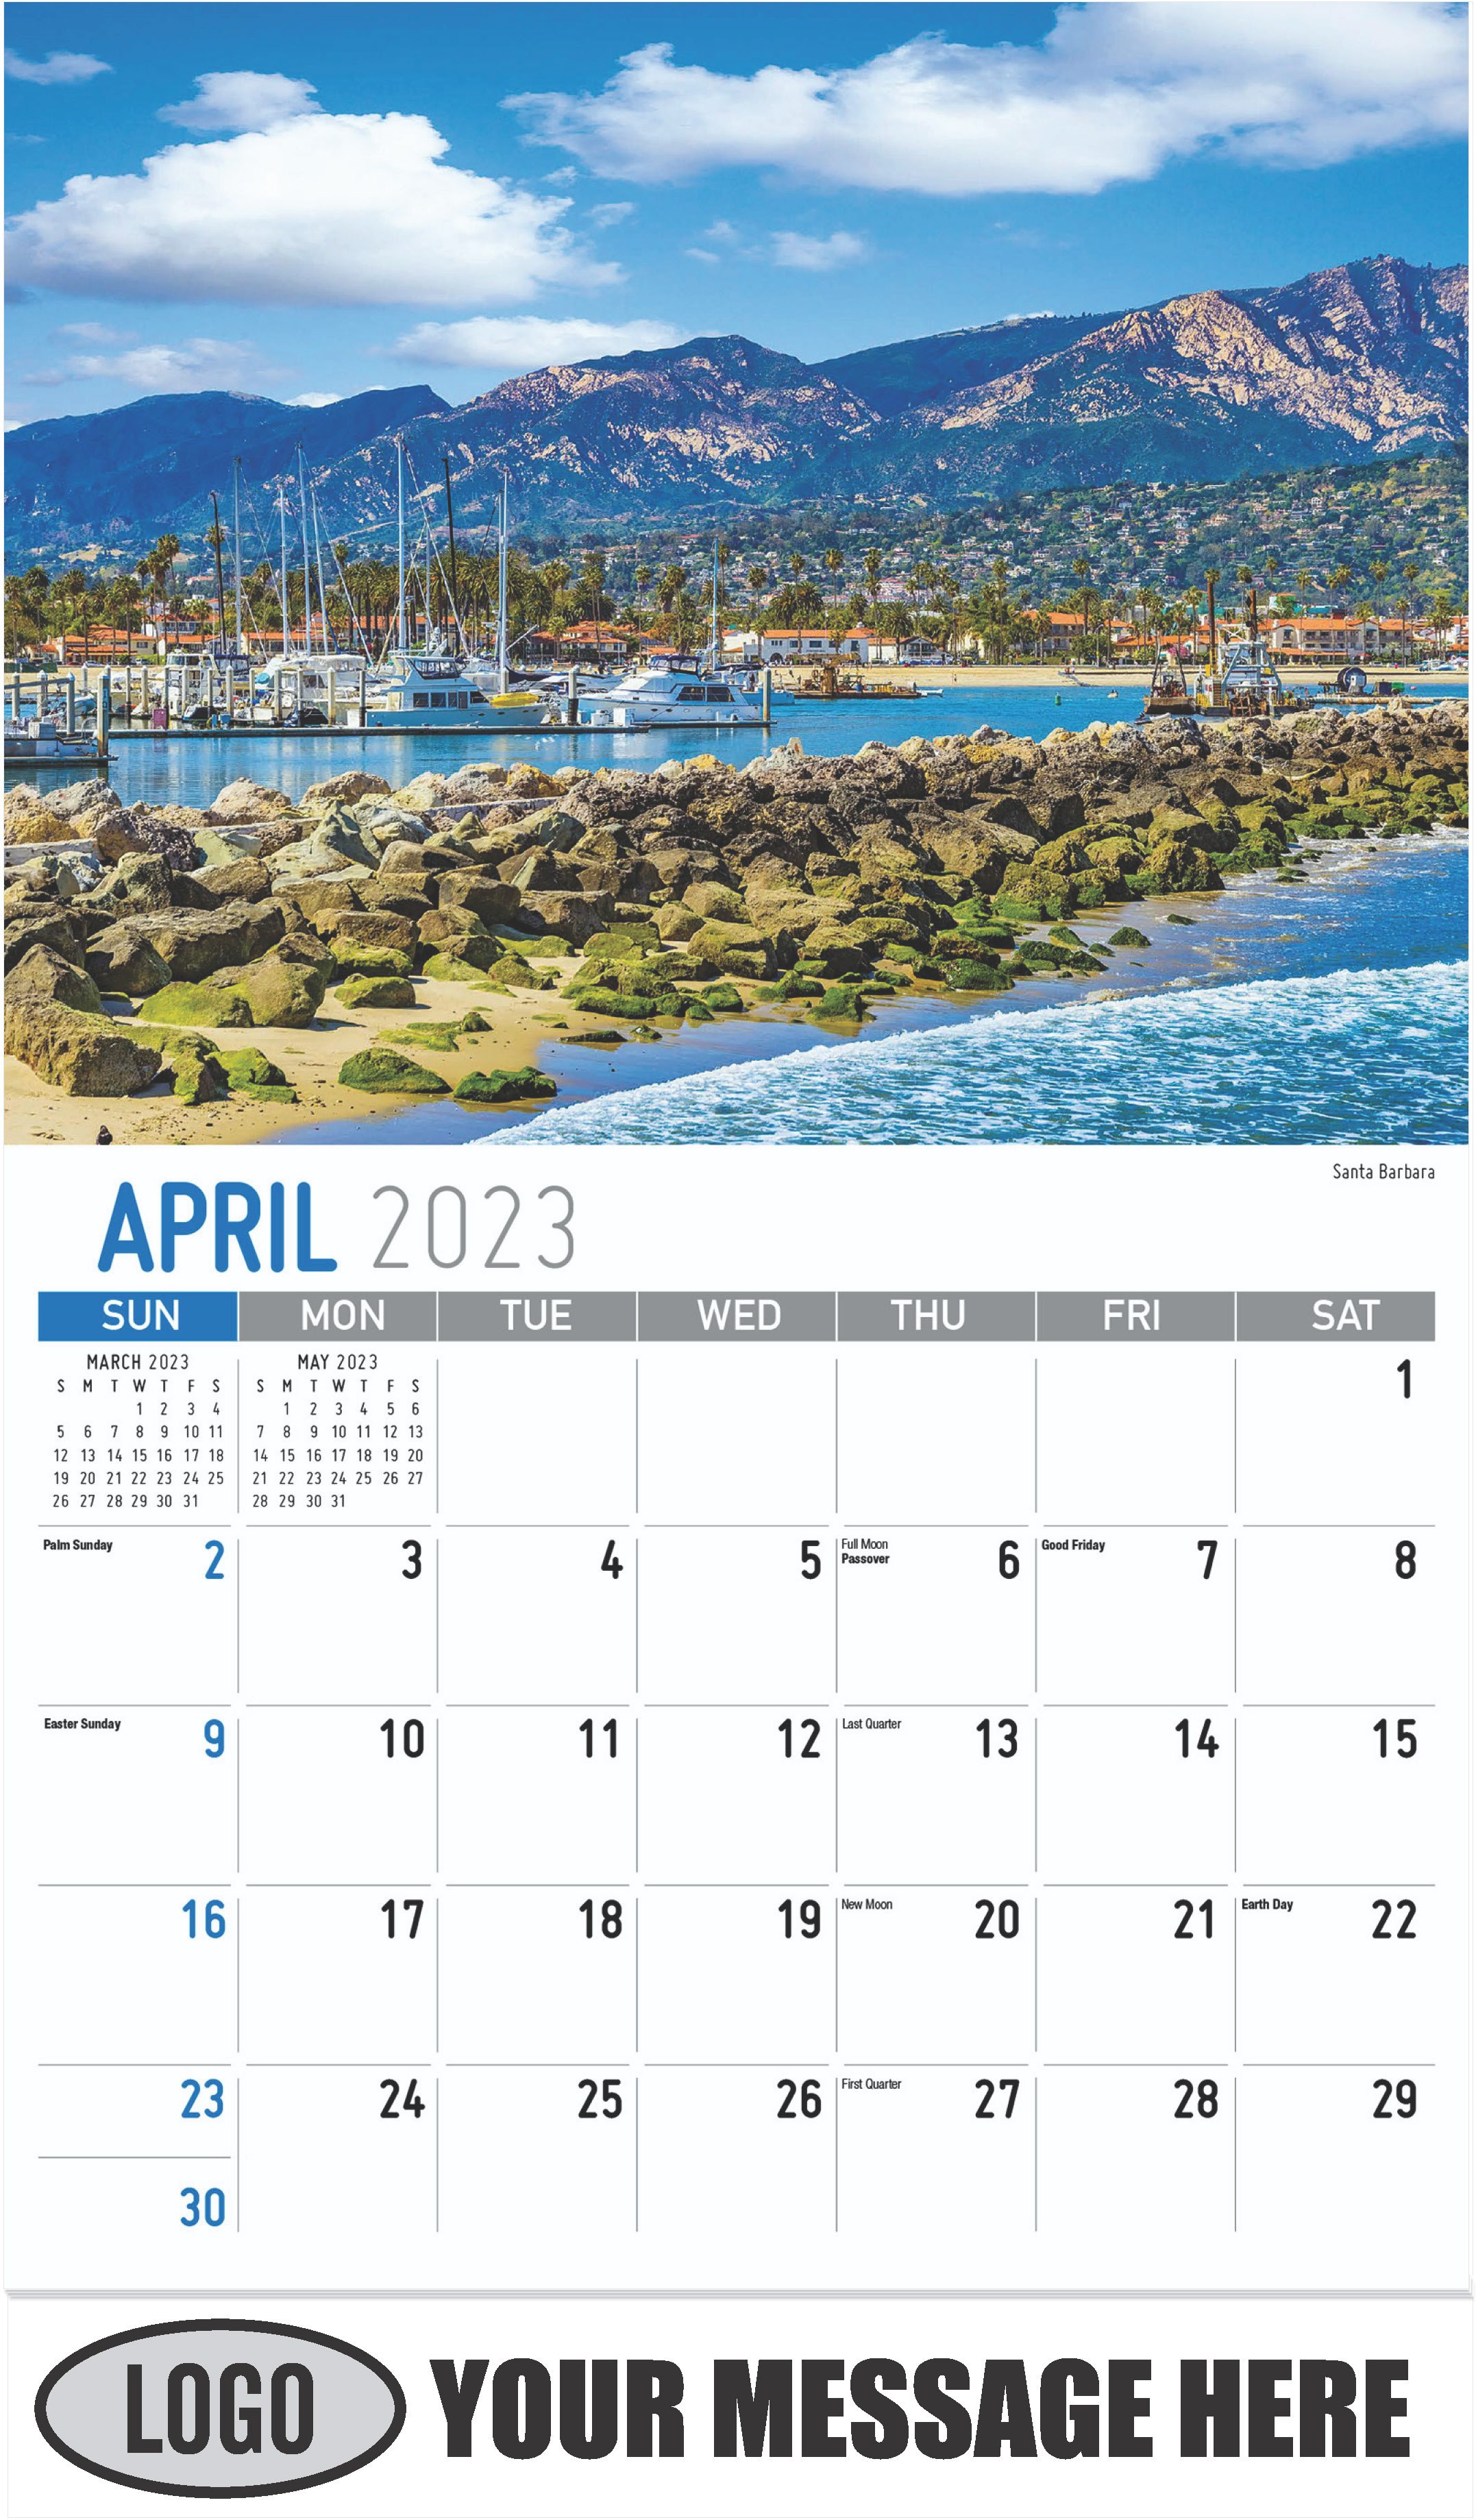 Santa Barbara - April - Scenes of California 2023 Promotional Calendar